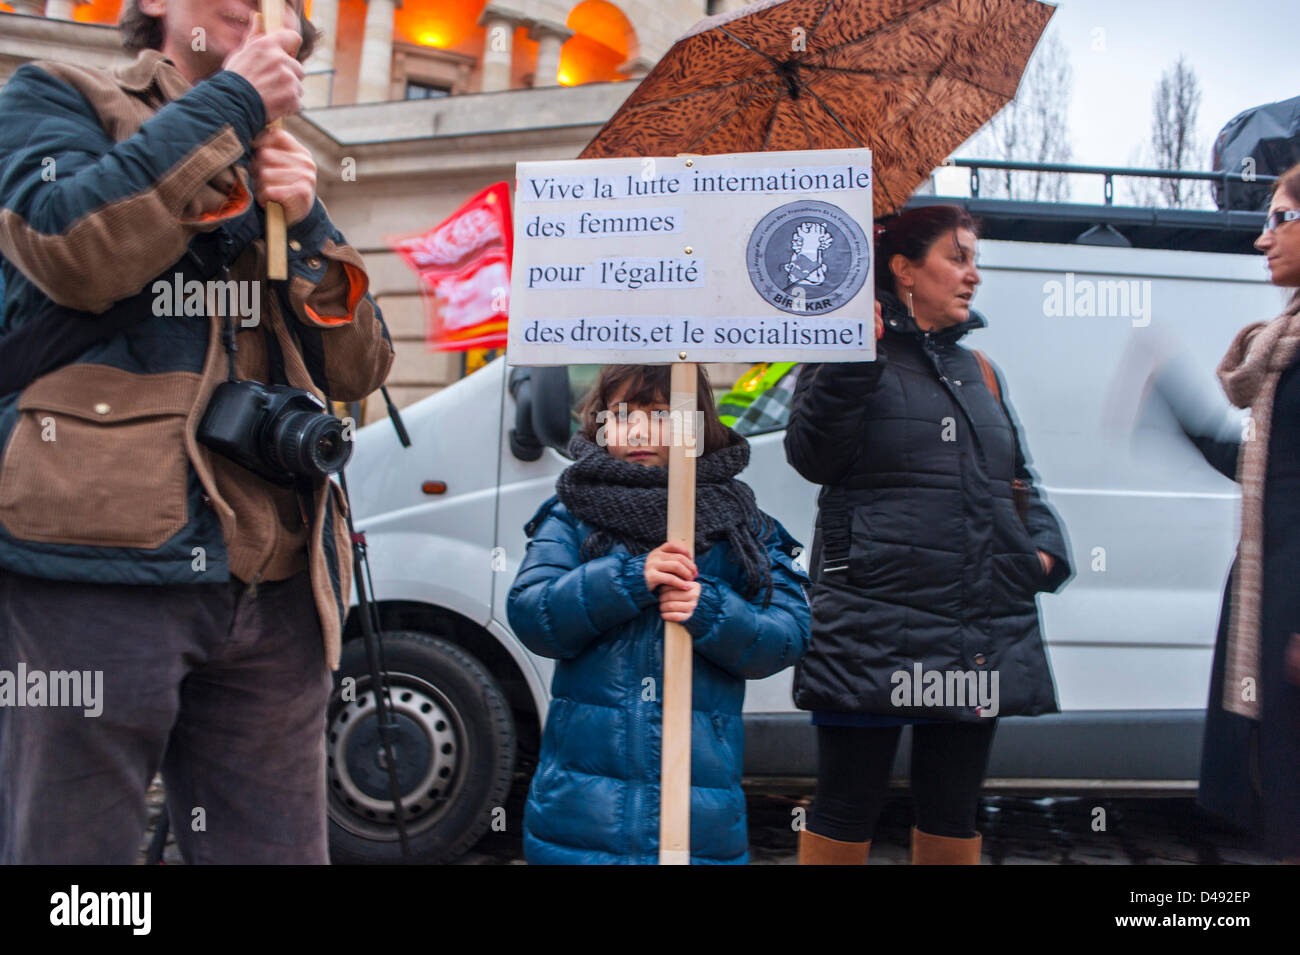 Paris, France.8th mars, des groupes de féministes françaises défilent dans la démonstration annuelle de la Journée internationale de la femme.Manifestation de la jeune fille Sign on Street, manifestation familiale, participation politique des jeunes Banque D'Images